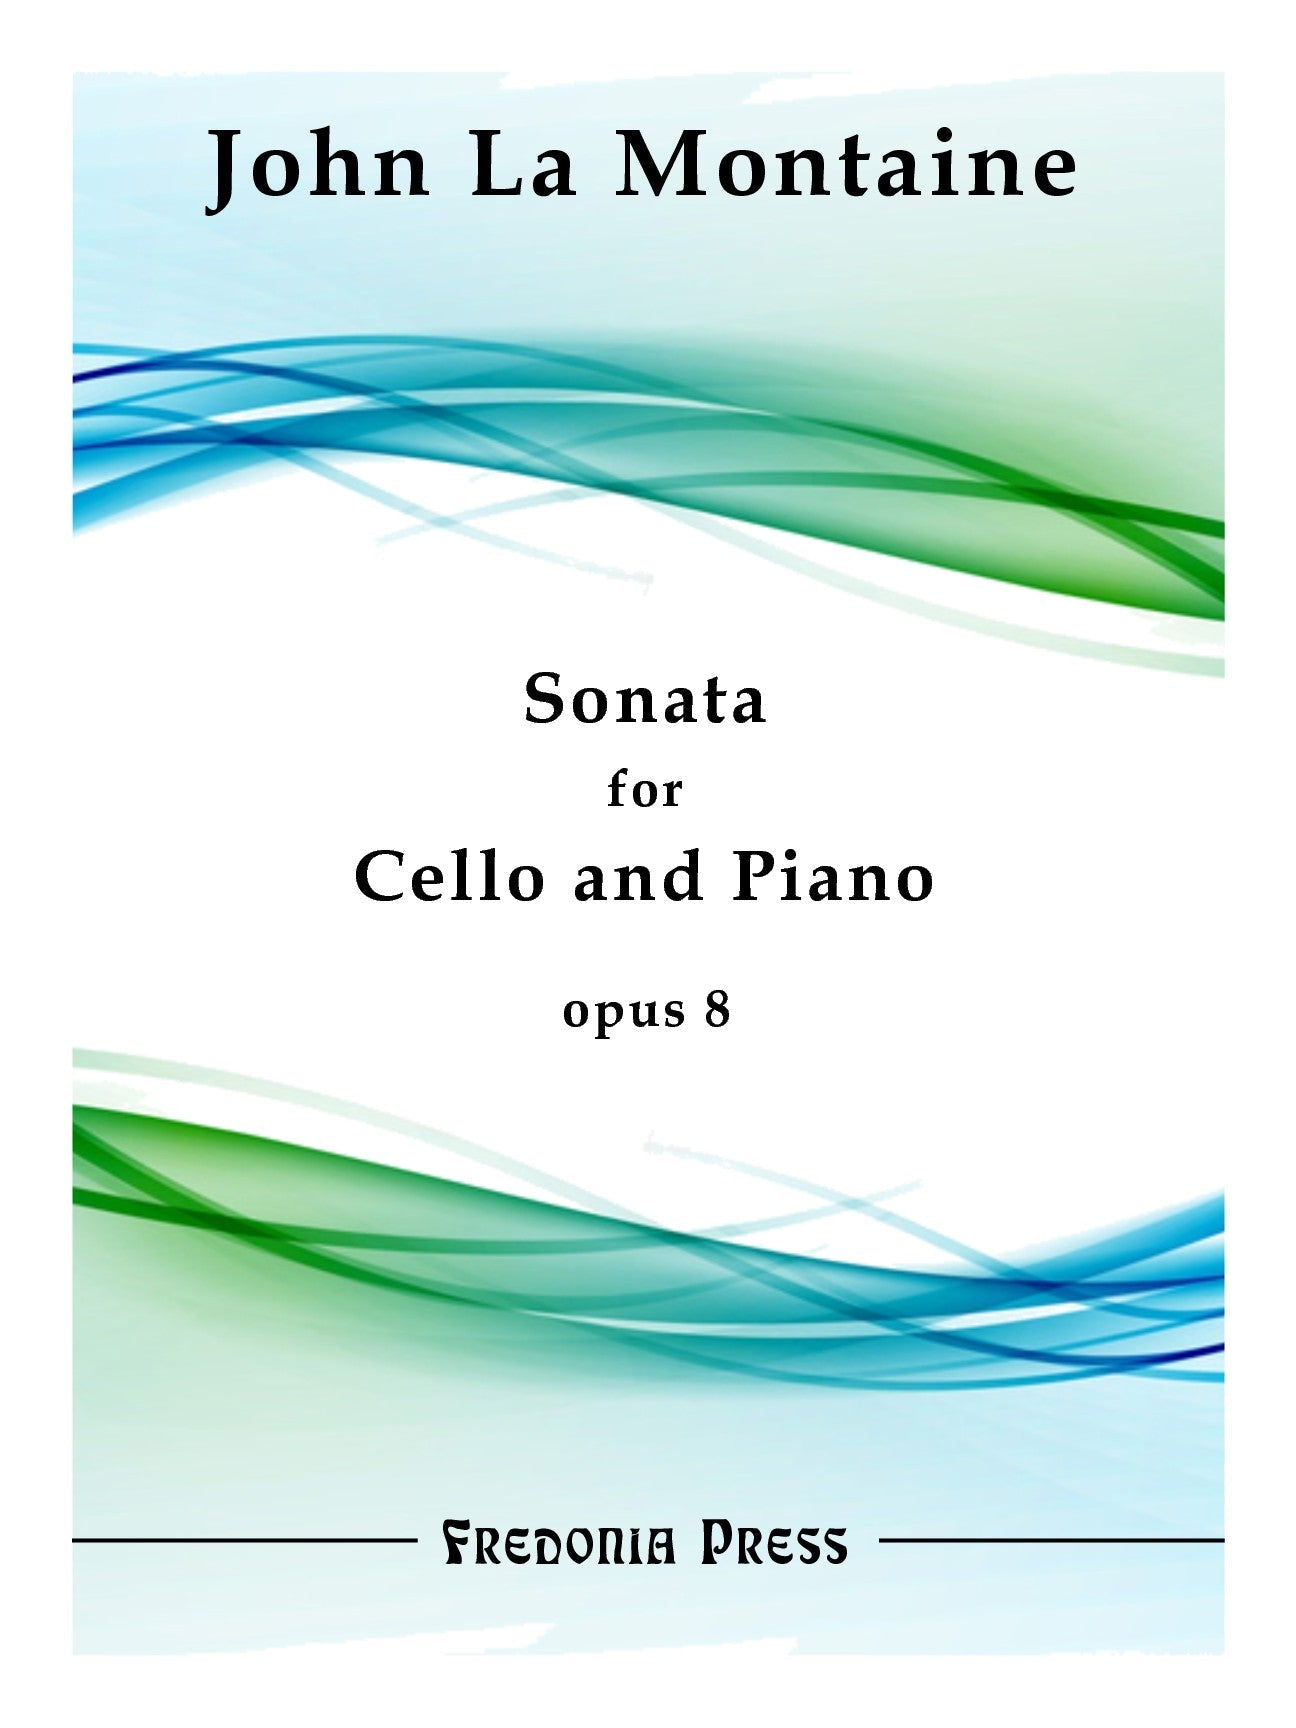 La Montaine: Cello Sonata, Op. 8